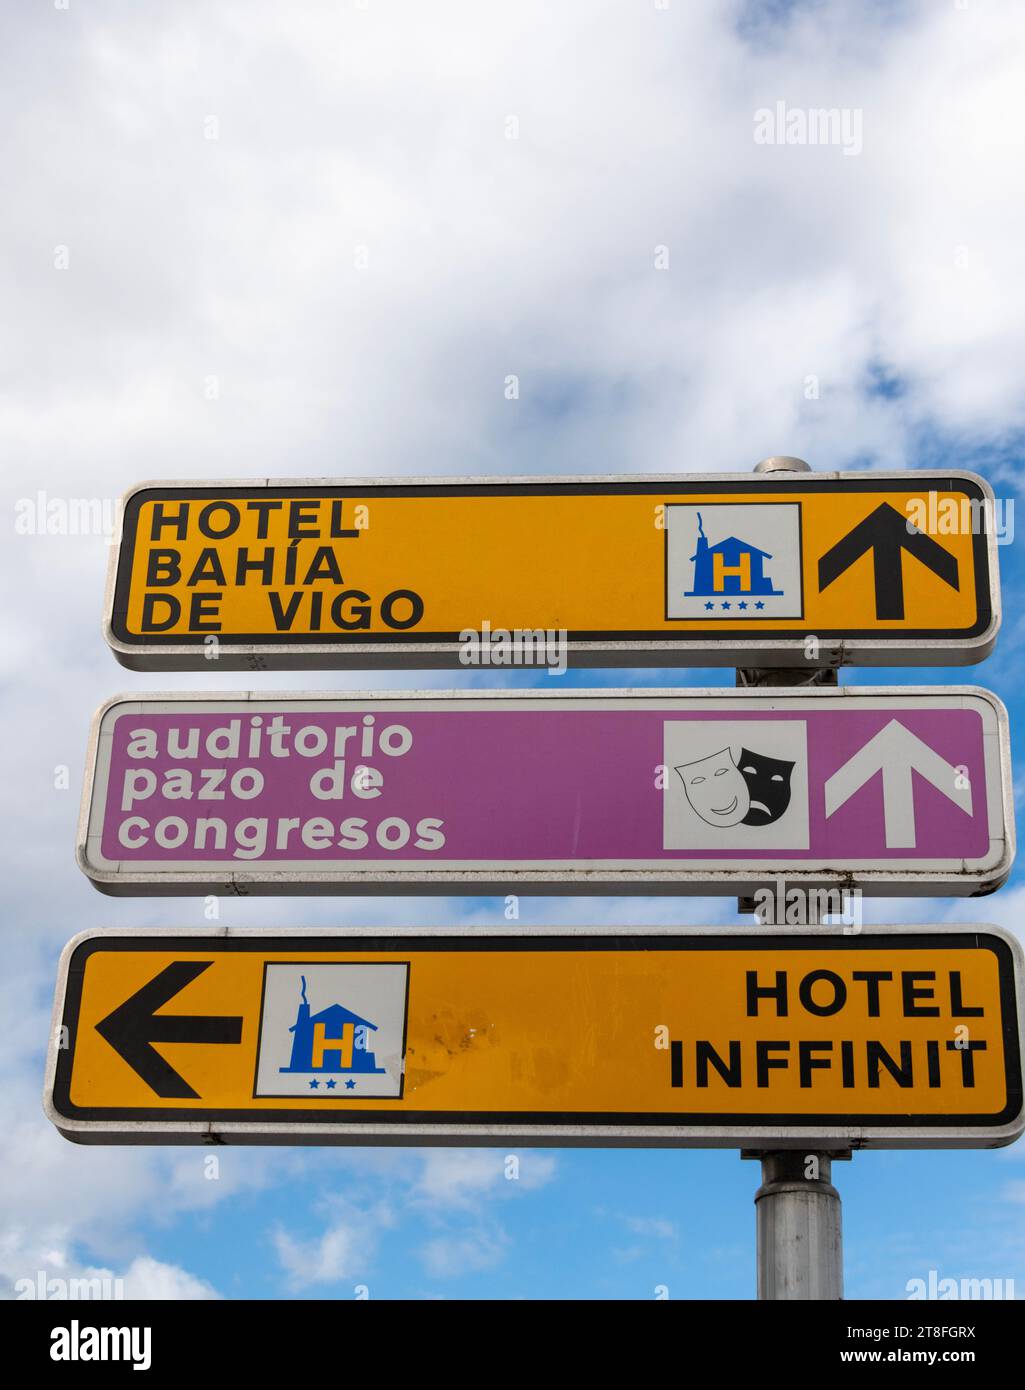 Vigo Espagne, panneaux indiquant Hotel Bahia de Vigo, Hotel Inffinit et panneau rose indiquant auditorio plaza de congresos Banque D'Images